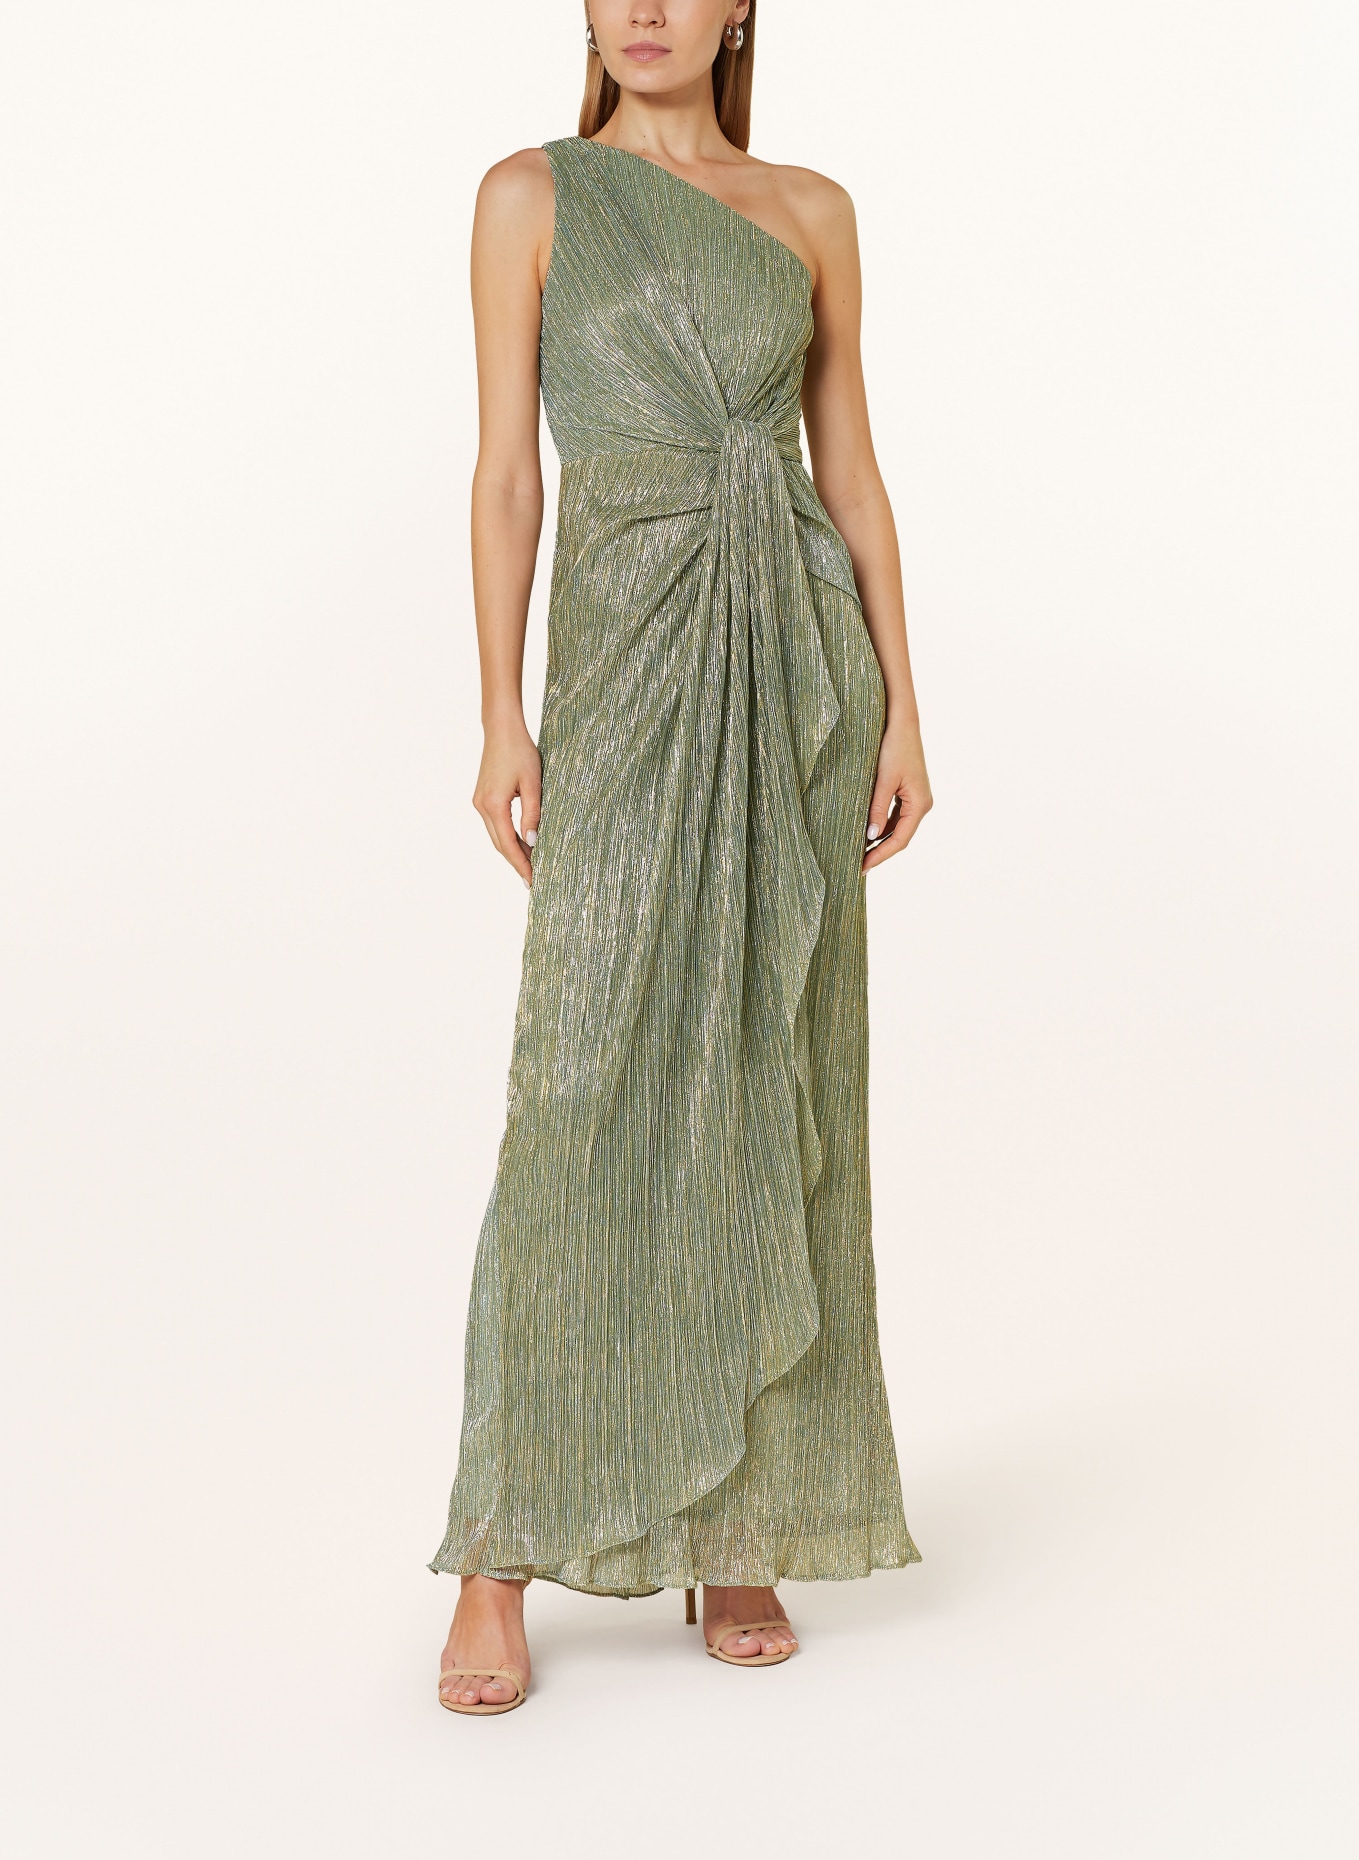 ADRIANNA PAPELL One-Shoulder-Kleid mit Glitzergarn, Farbe: HELLGRÜN/ GOLD (Bild 2)